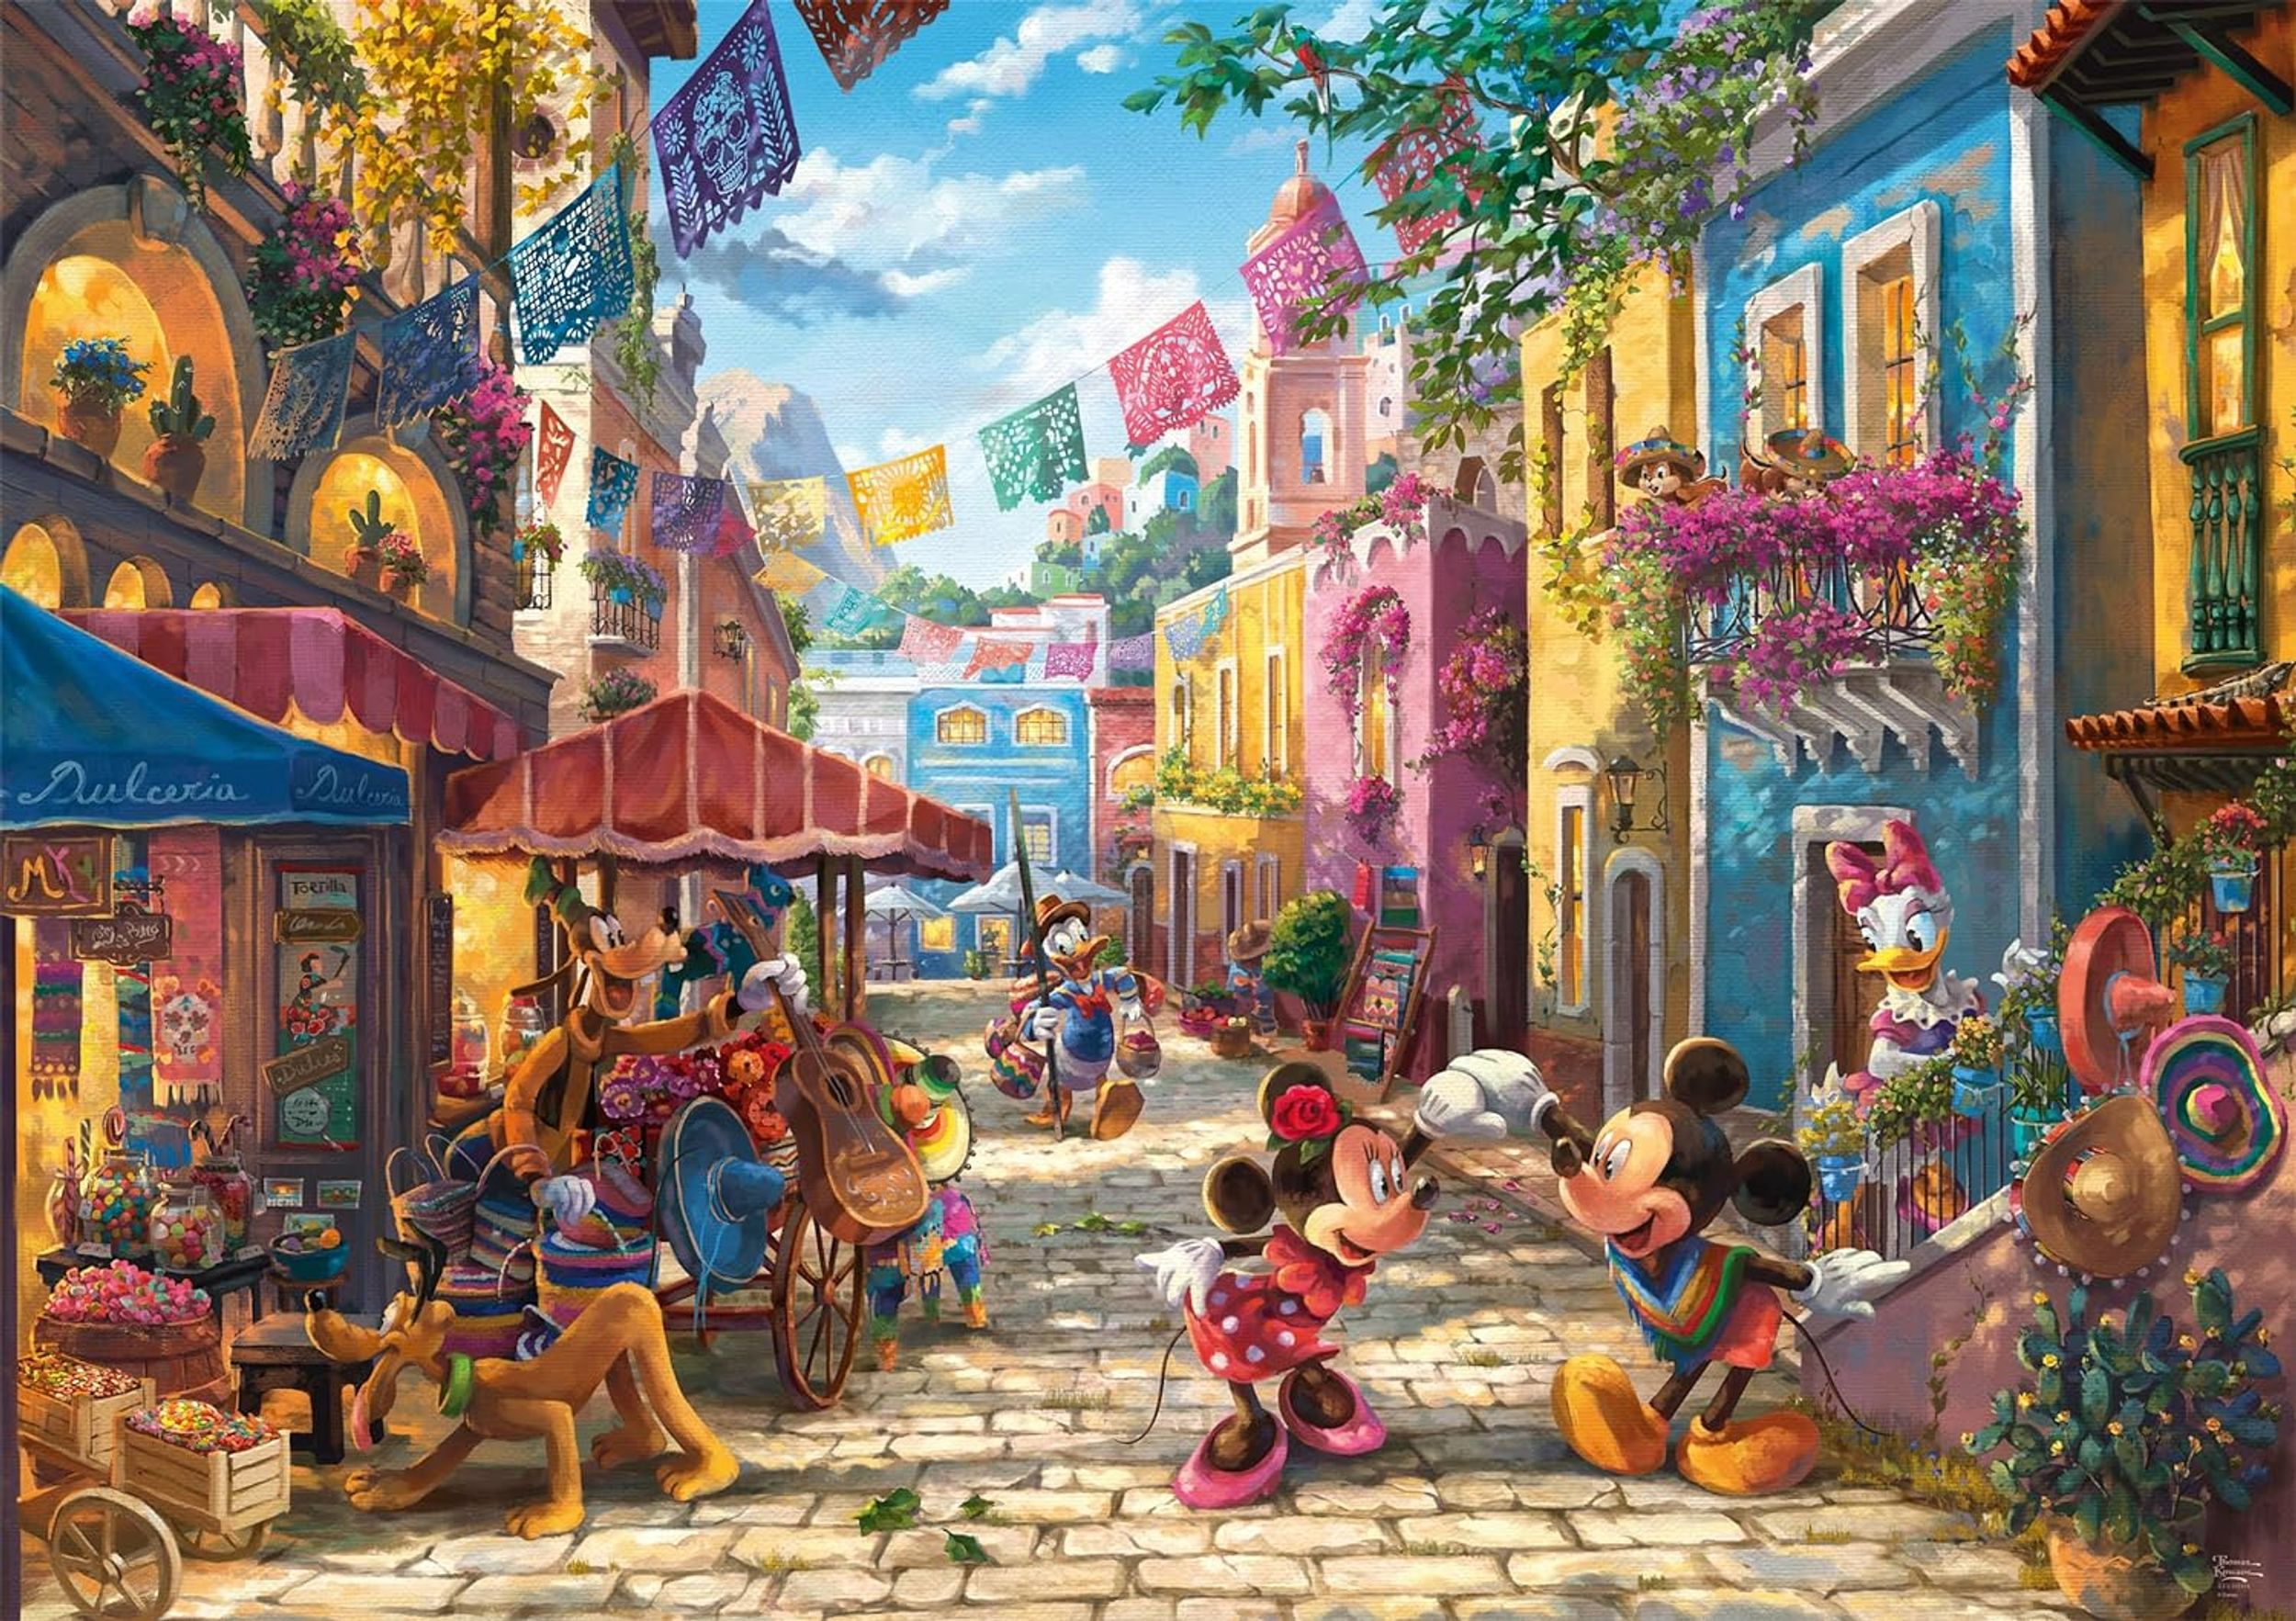 SCHMIDT SPIELE Mickey und Minnie in Puzzle Mexico